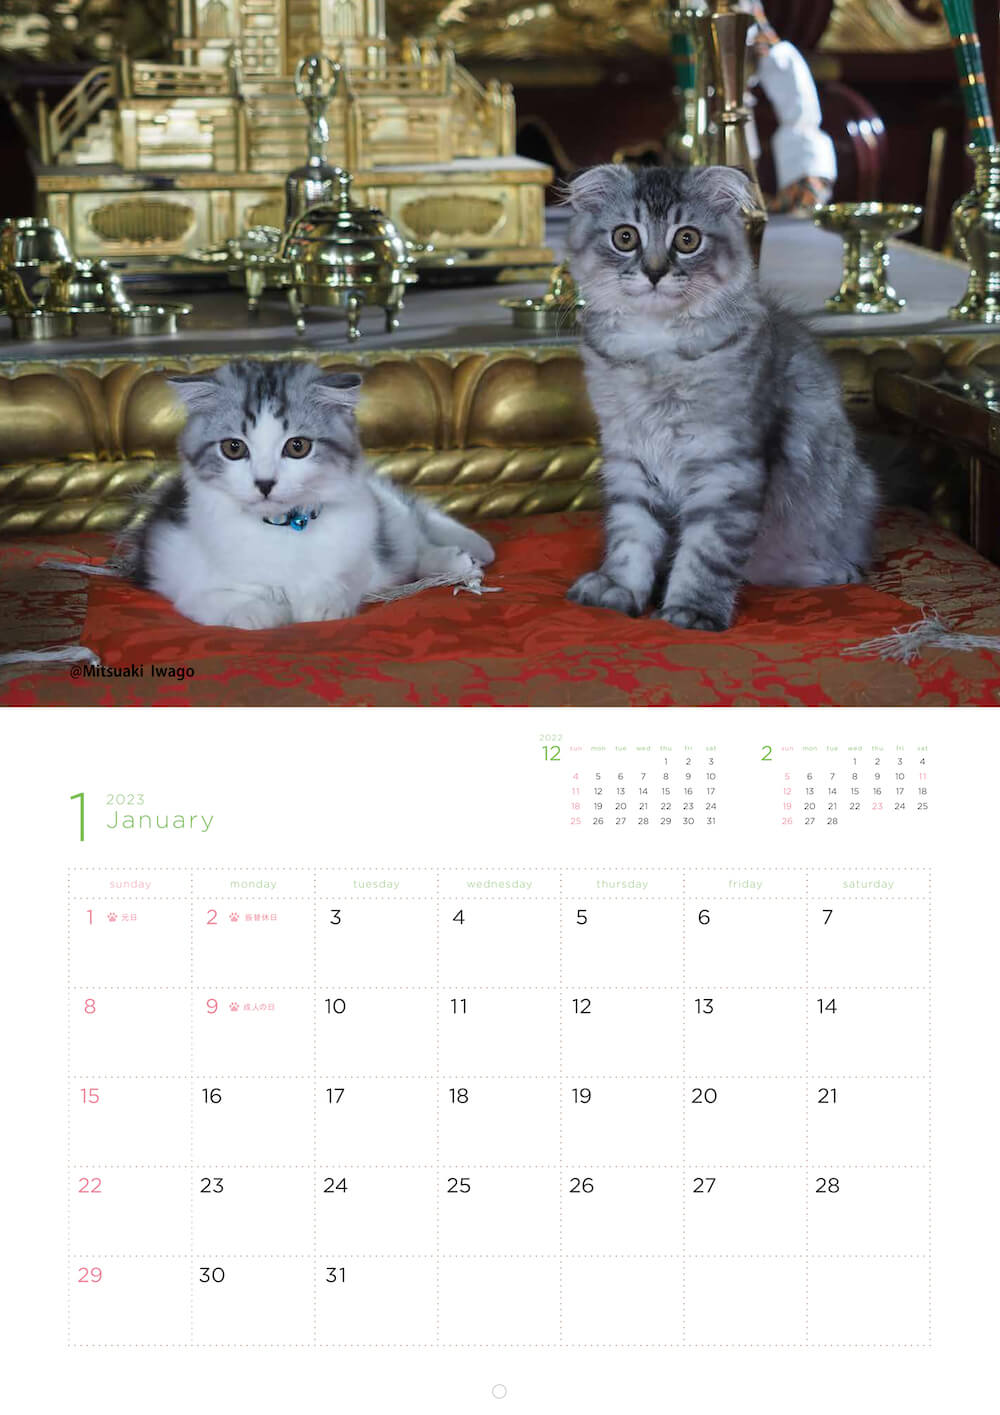 お寺の仏像の前で座る猫たちの写真 by 岩合光昭